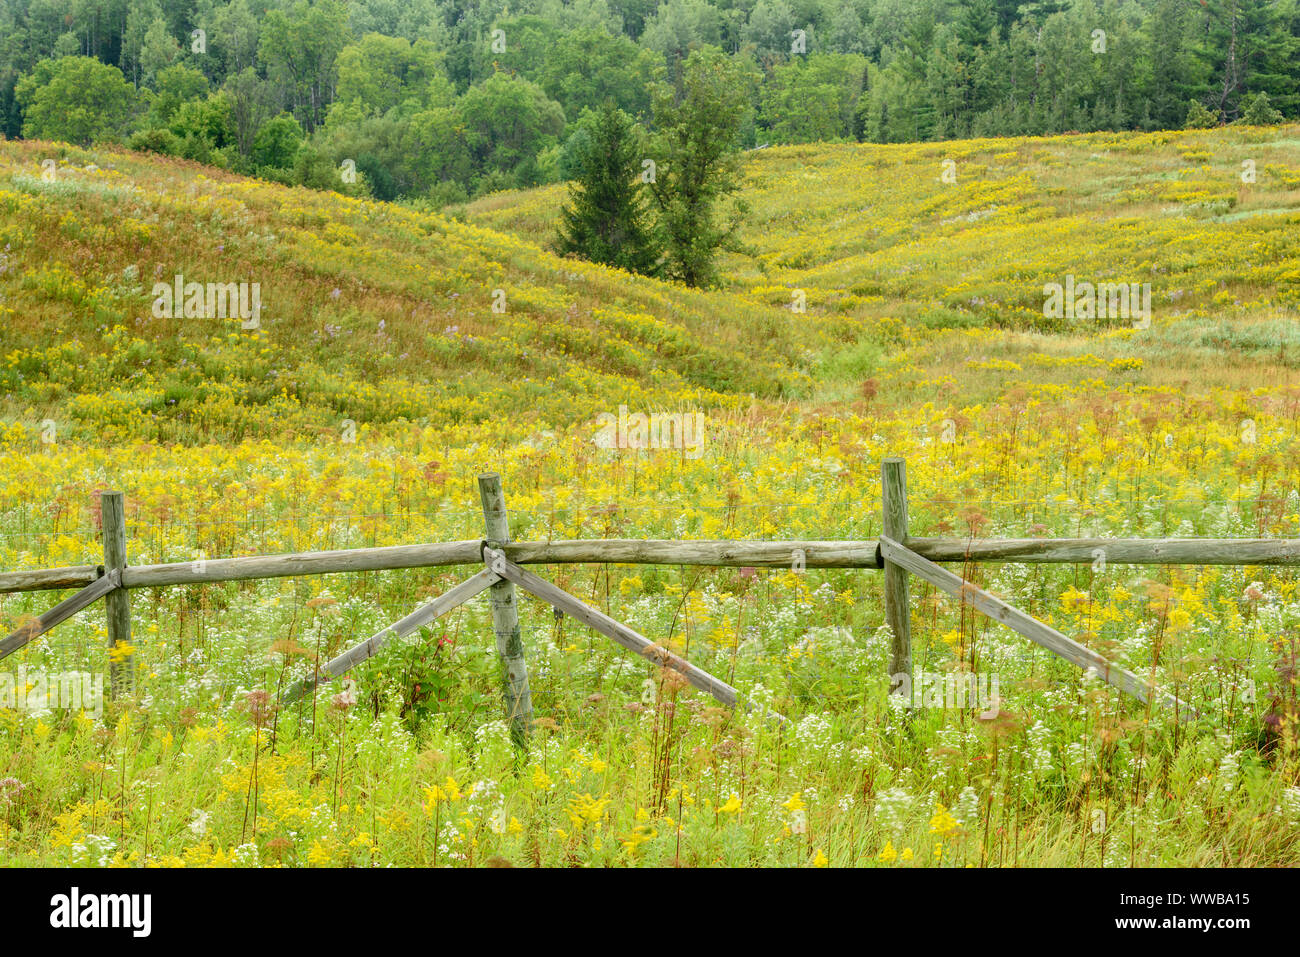 Ende Sommer Feld mit blühenden Astern und Goldrute, in der Nähe von Pappeln, Wisconsin, USA Stockfoto